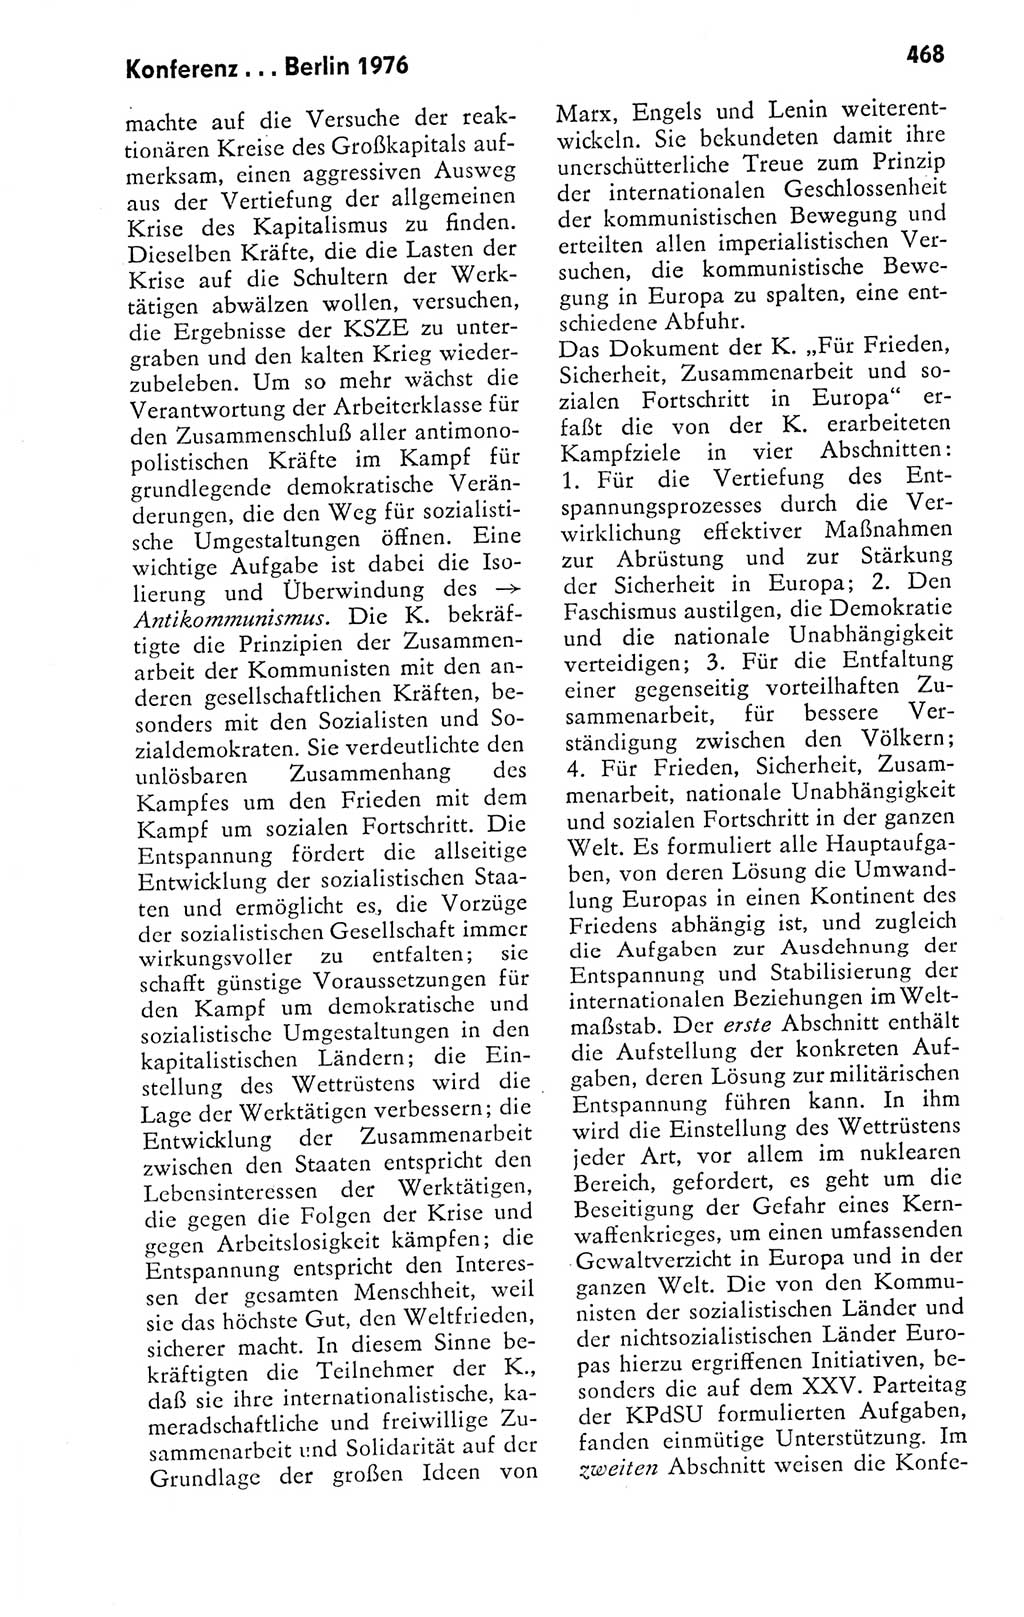 Kleines politisches Wörterbuch [Deutsche Demokratische Republik (DDR)] 1978, Seite 468 (Kl. pol. Wb. DDR 1978, S. 468)